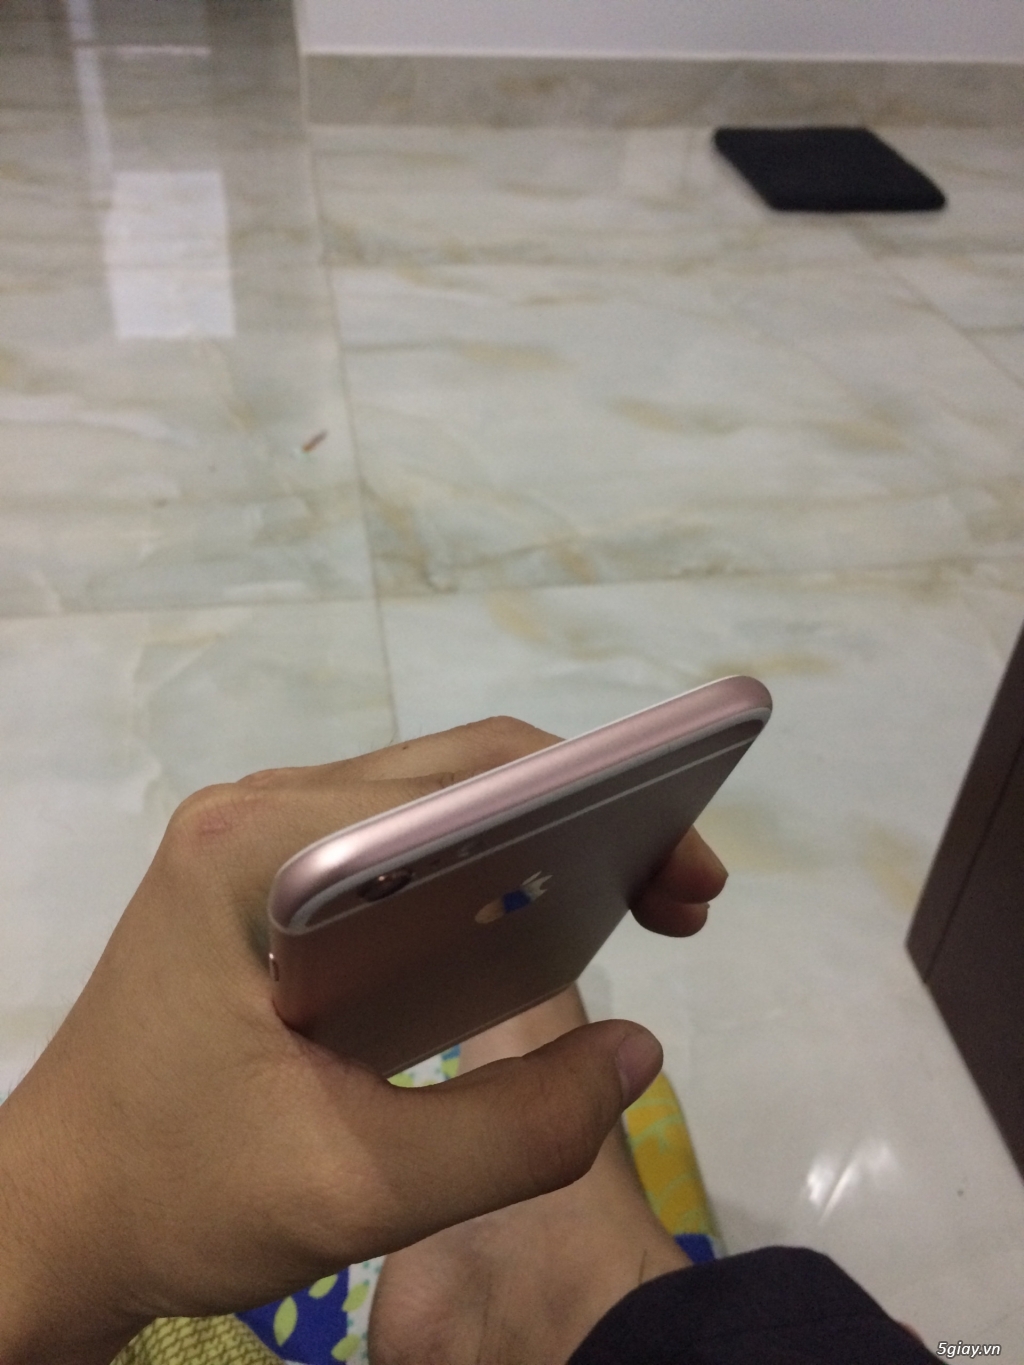 Bán Iphone 6s Plus Vàng Hồng 16GB Gò Vấp - 5